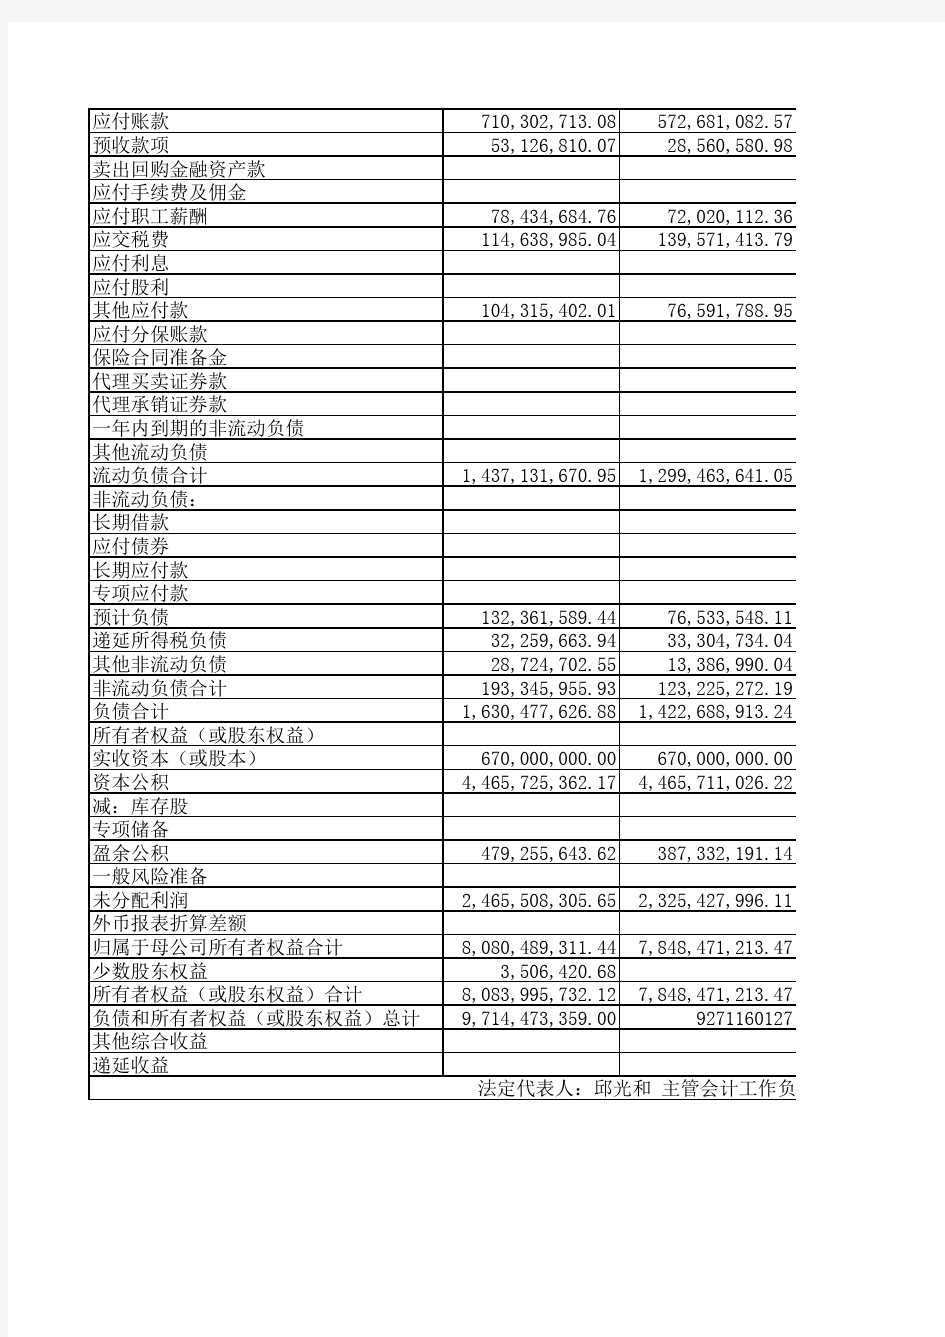 2013年度资产负债表